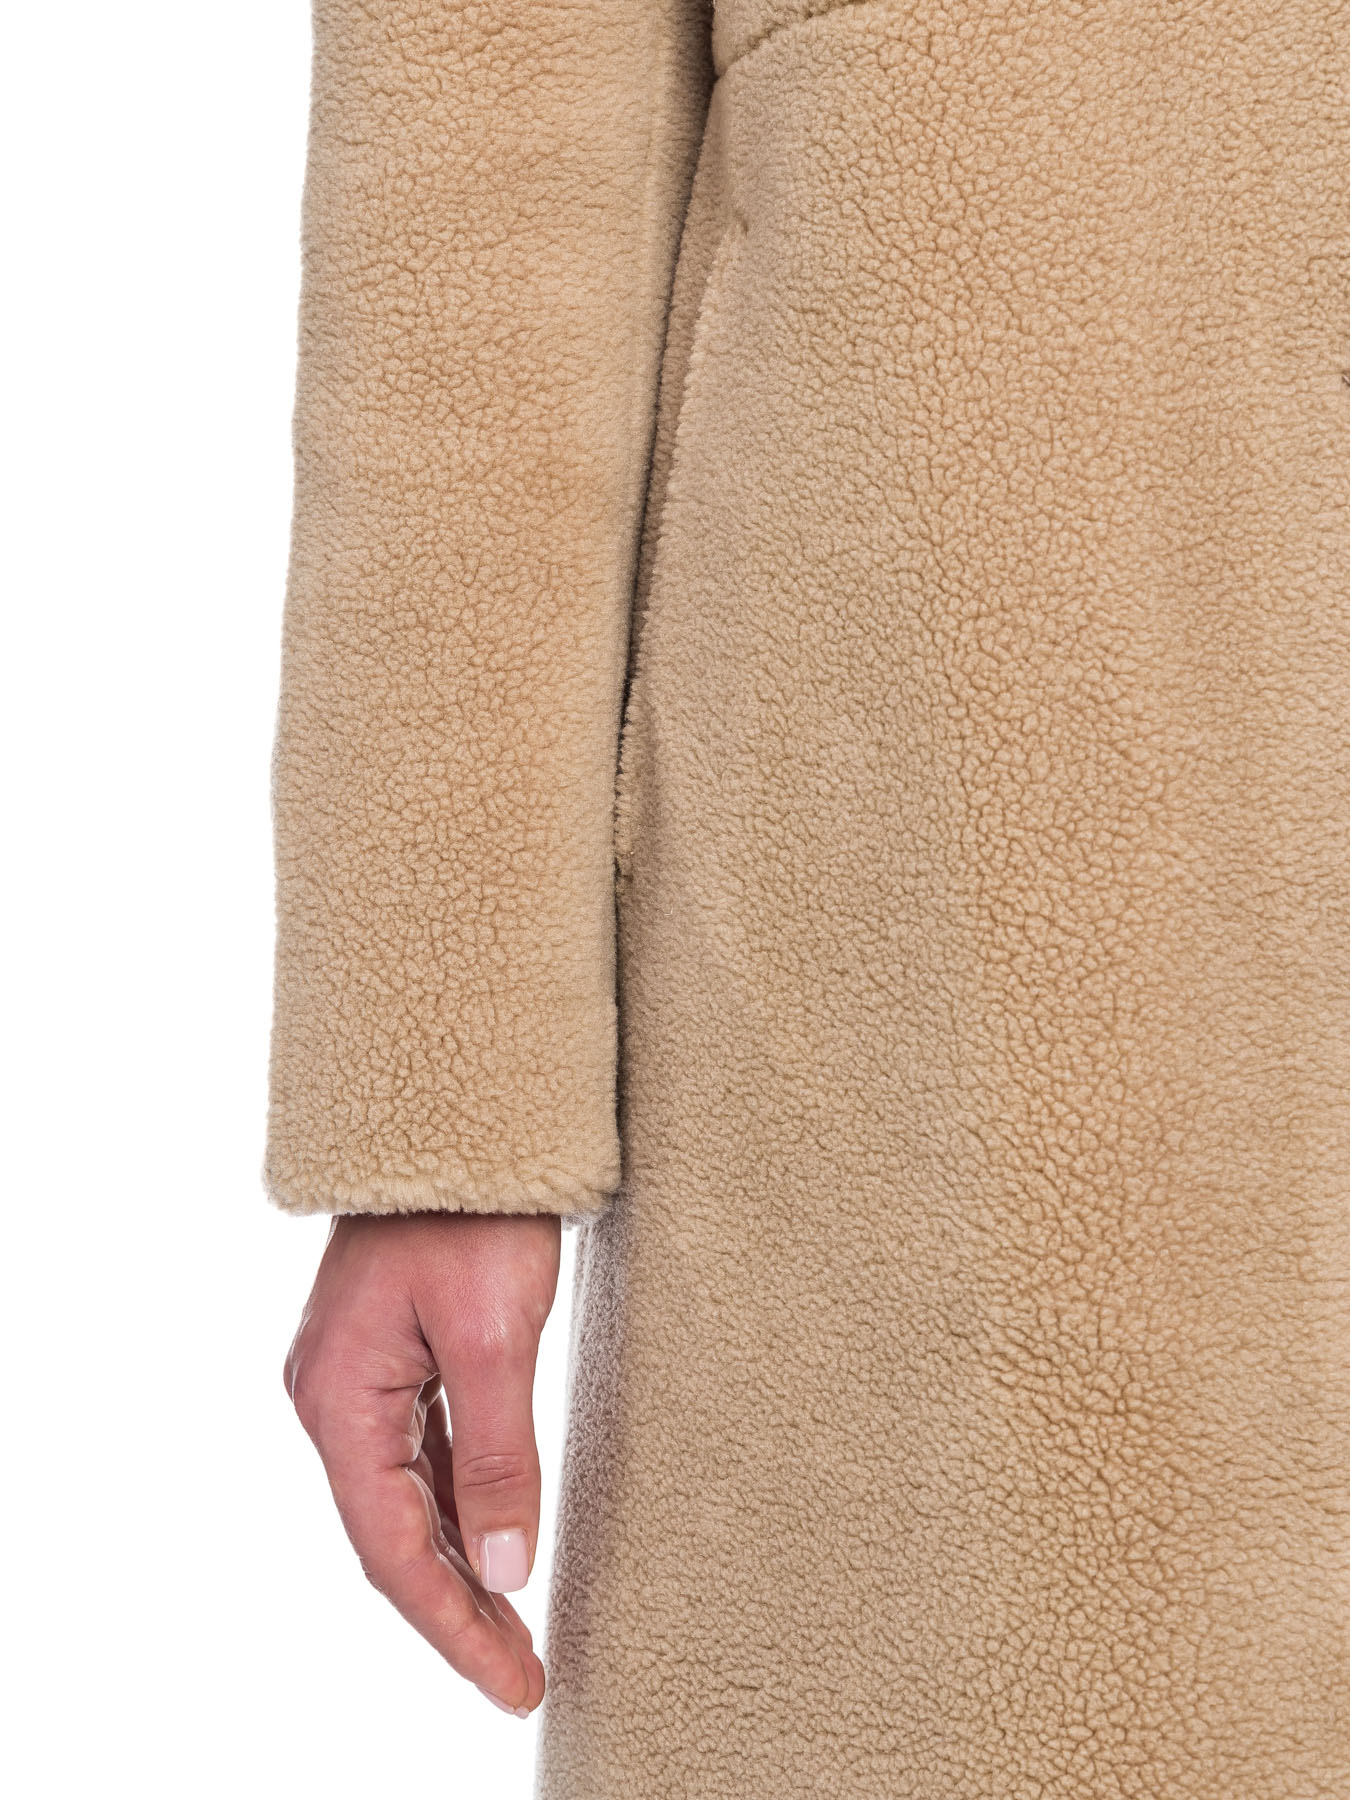 Женское полуприталенное пальто из эко-меха